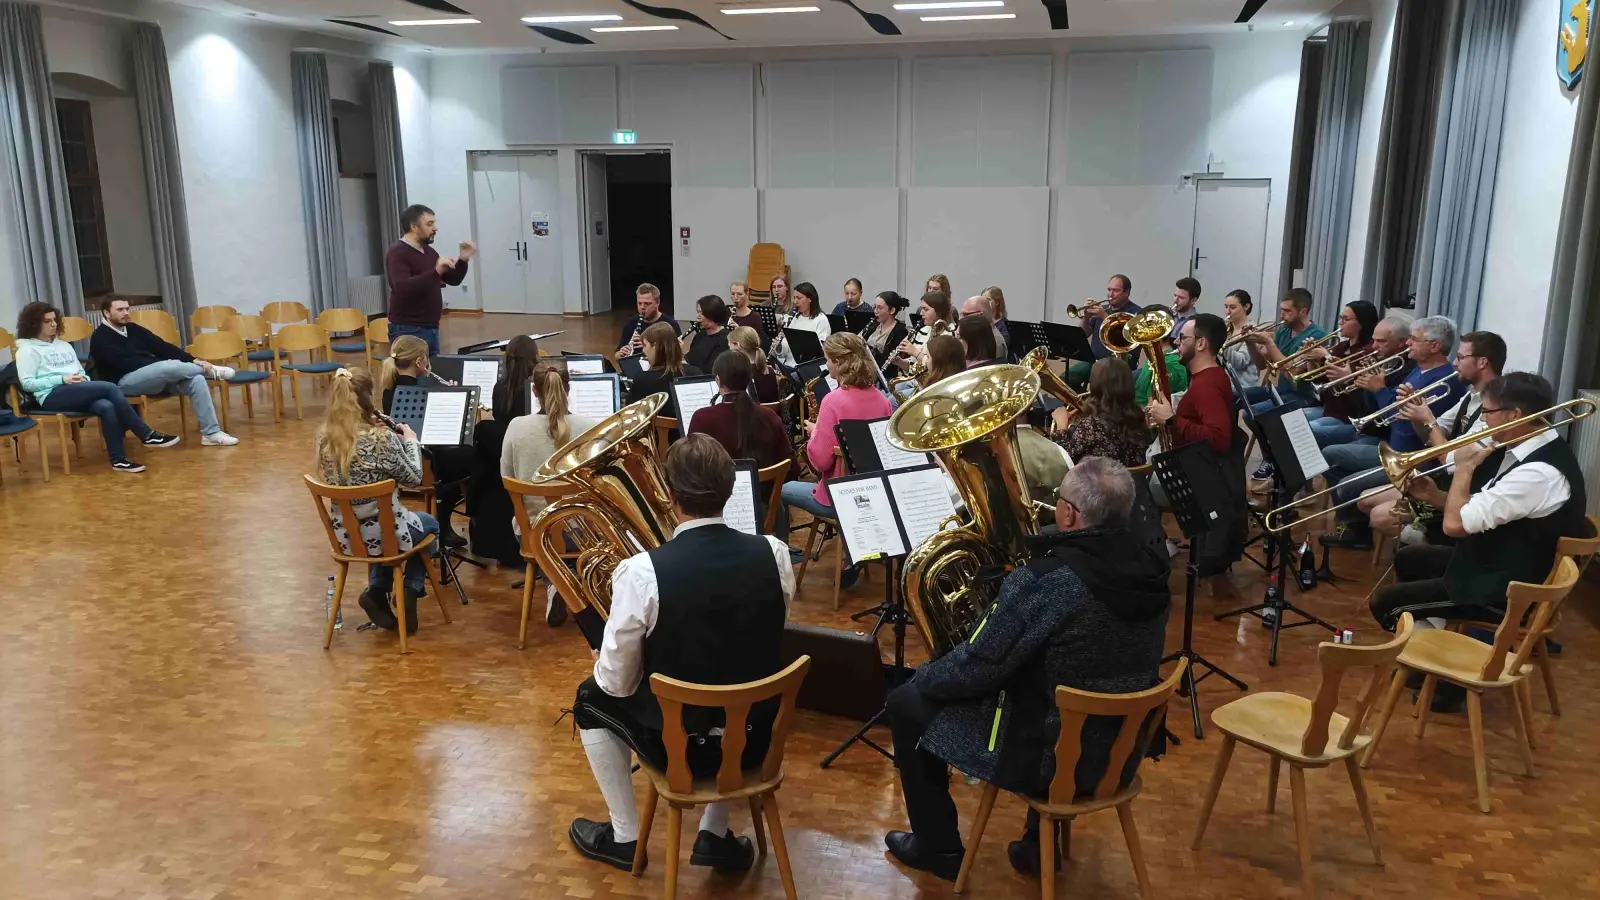 Erstmals lud der Musikverein Thierhaupten am vergangenen Freitag zu einer öffentlichen Probe des Konzertorchesters. Die Gäste konnten sich dabei einen Eindruck über die Arbeit des Dirigenten und seiner Musiker verschaffen. (Foto: Wilhelm Wagner)